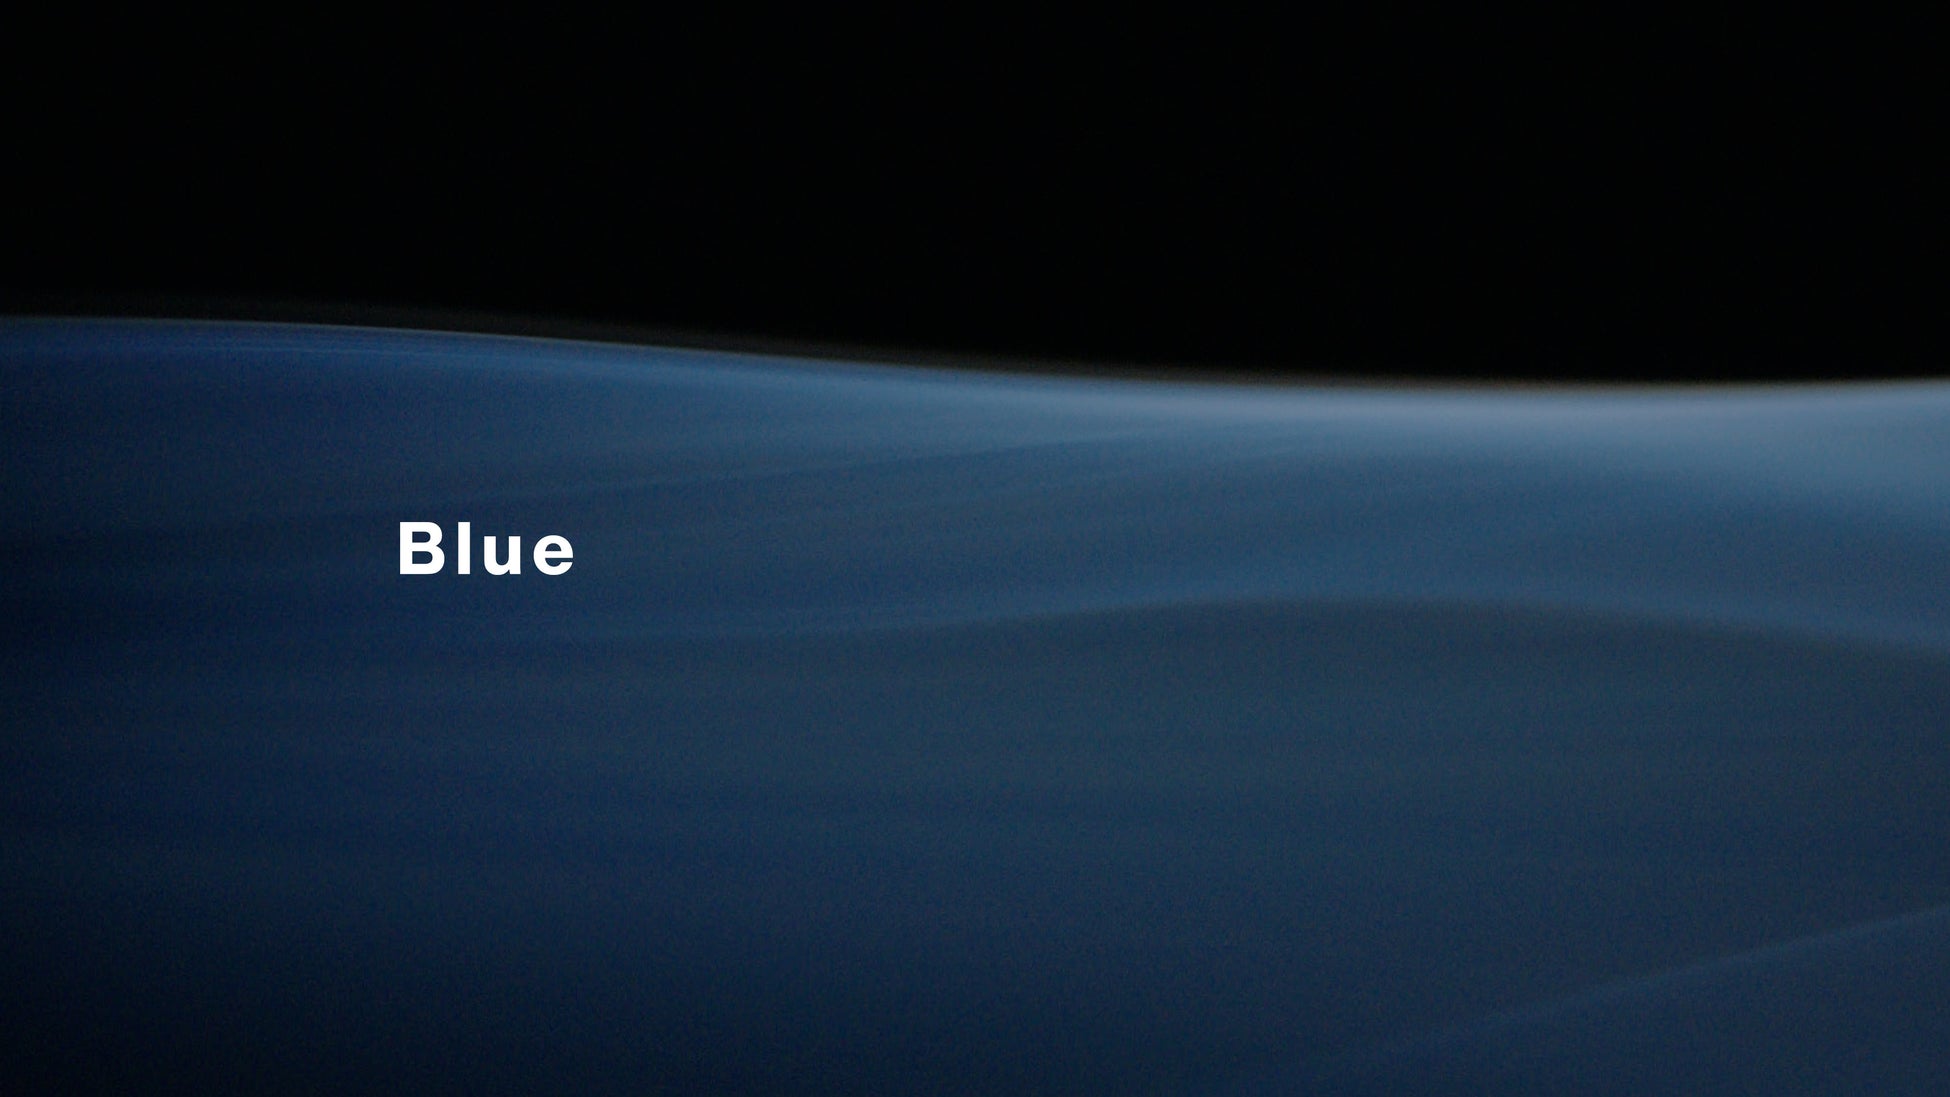 Hondaグローバル企業広告に起用の、菅野よう子/“Blue feat. Maya”待望のフルサイズ音源が、本日より配信スタート&Music Visualizer解禁!